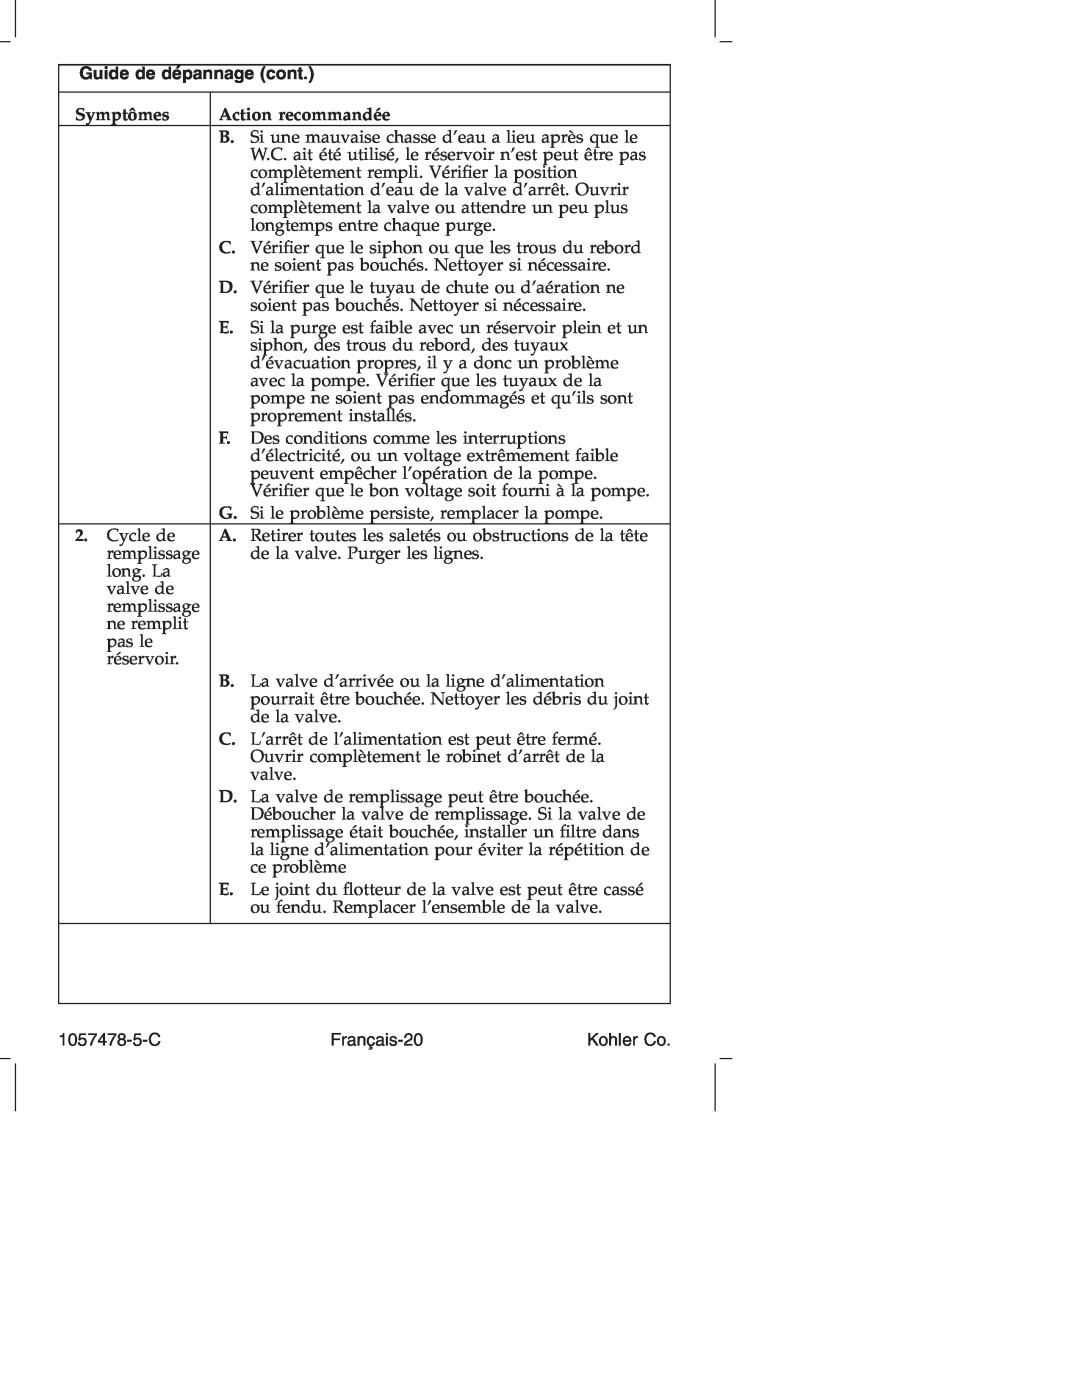 Kohler K-3393 manual Guide de dépannage cont, Symptômes, Action recommandée 